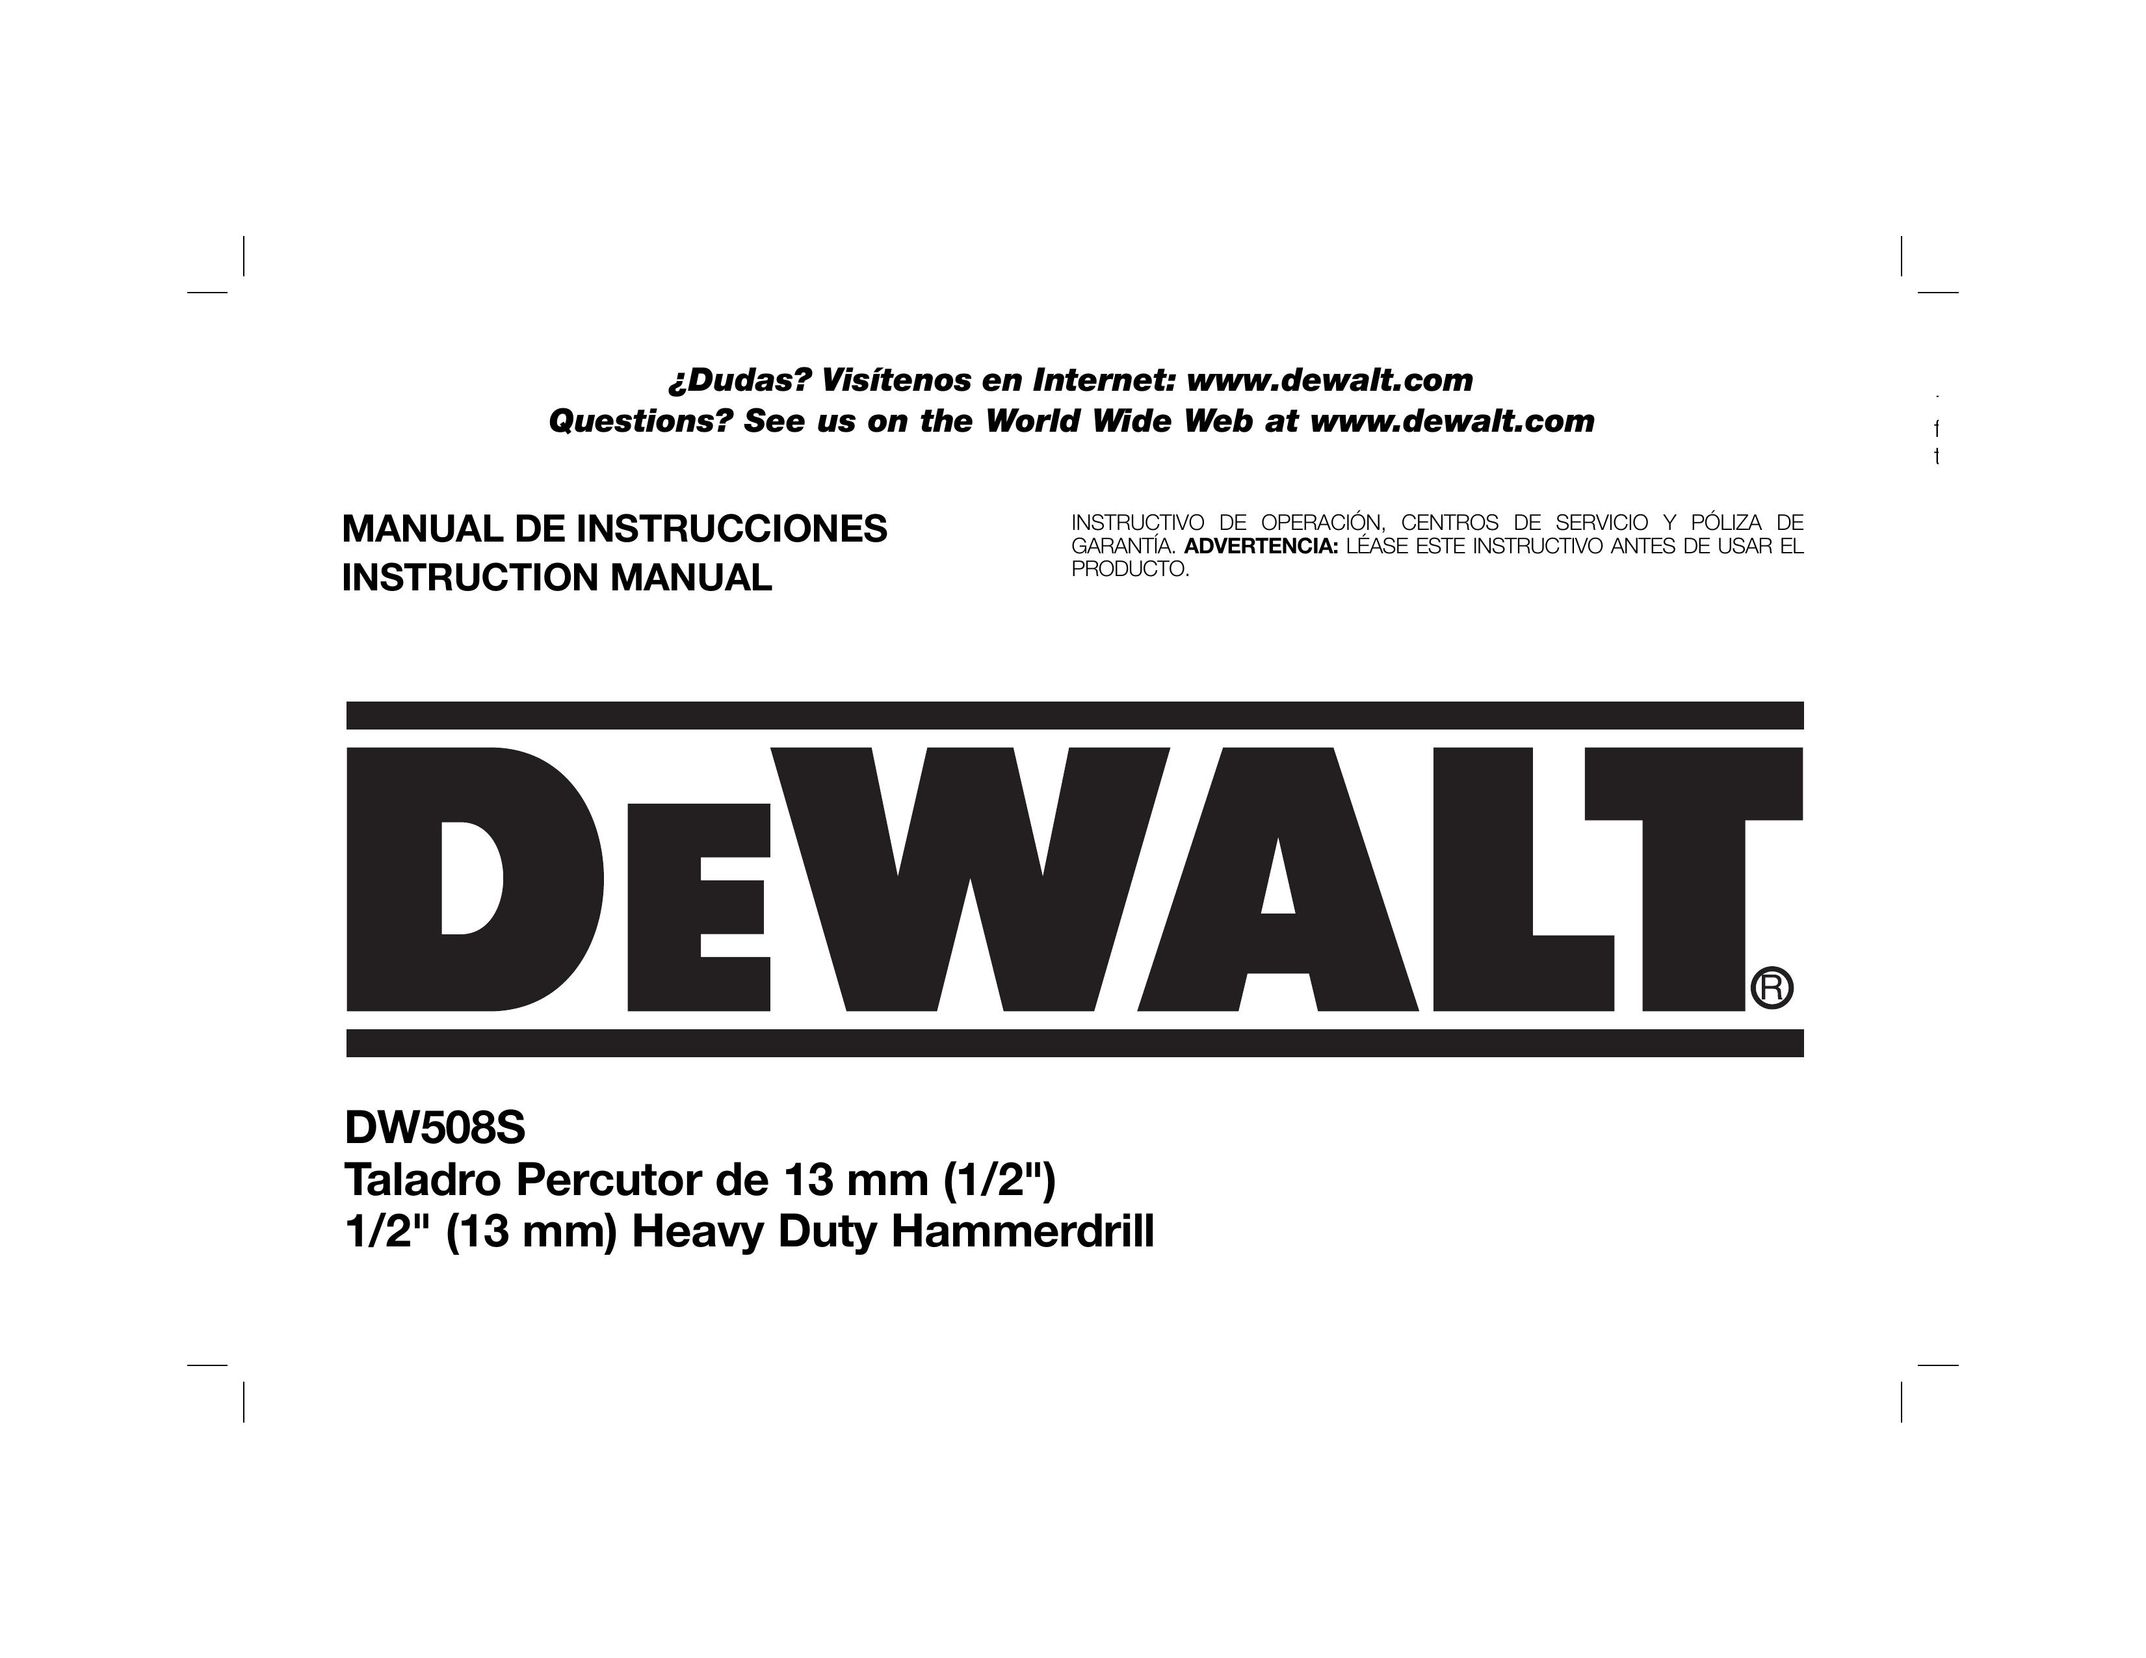 DeWalt DW508S Cordless Drill User Manual